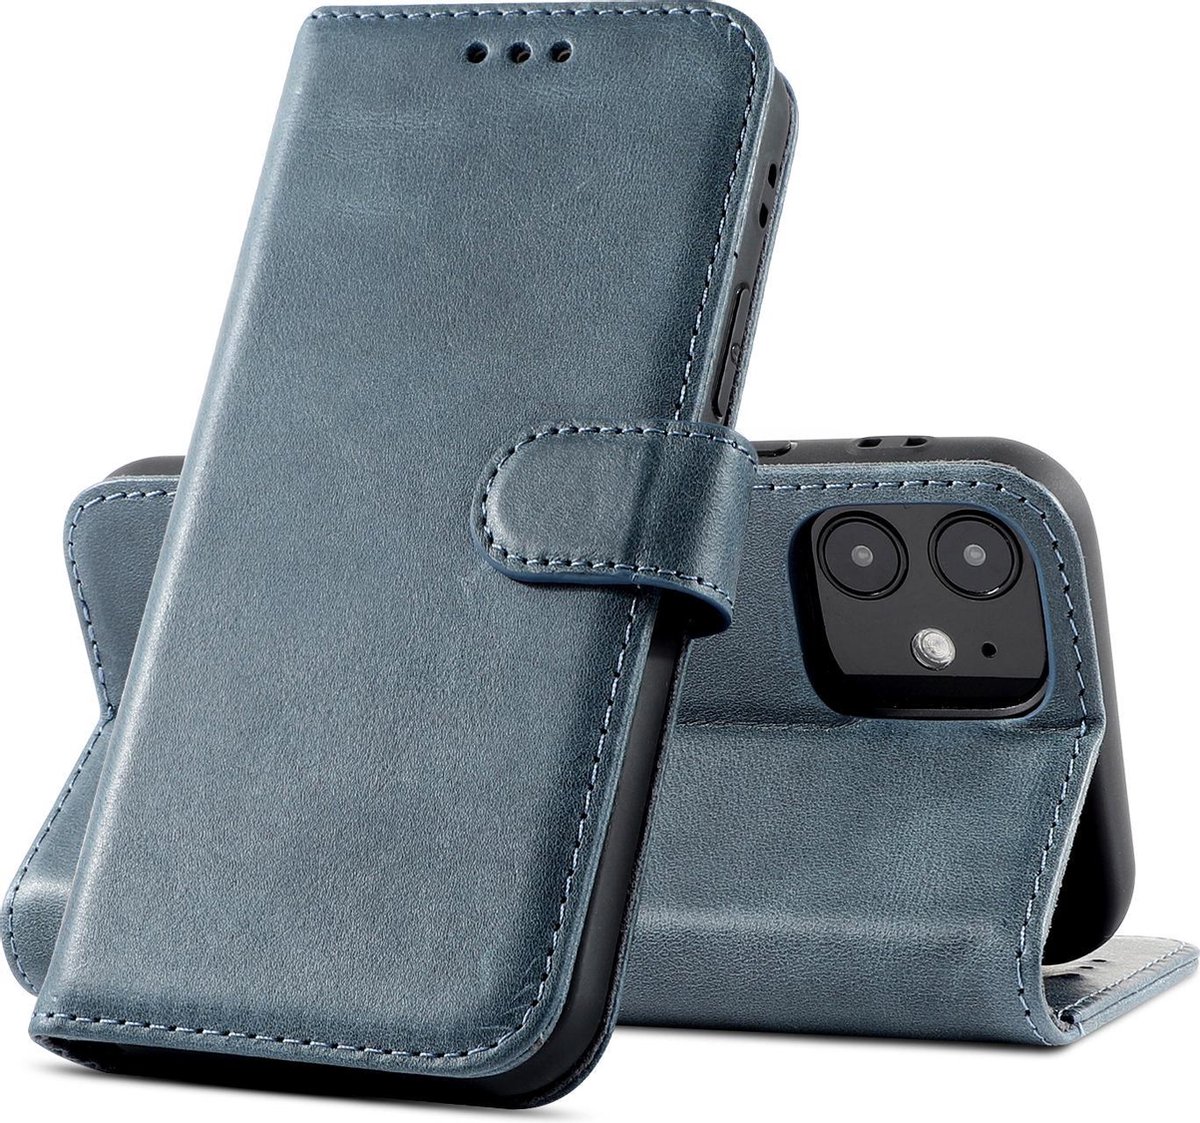 Klassiek Design - Echt Lederen Hoesje - Book Case Telefoonhoesje - Echt Leren Portemonnee Wallet Case - iPhone 12 Mini - Navy